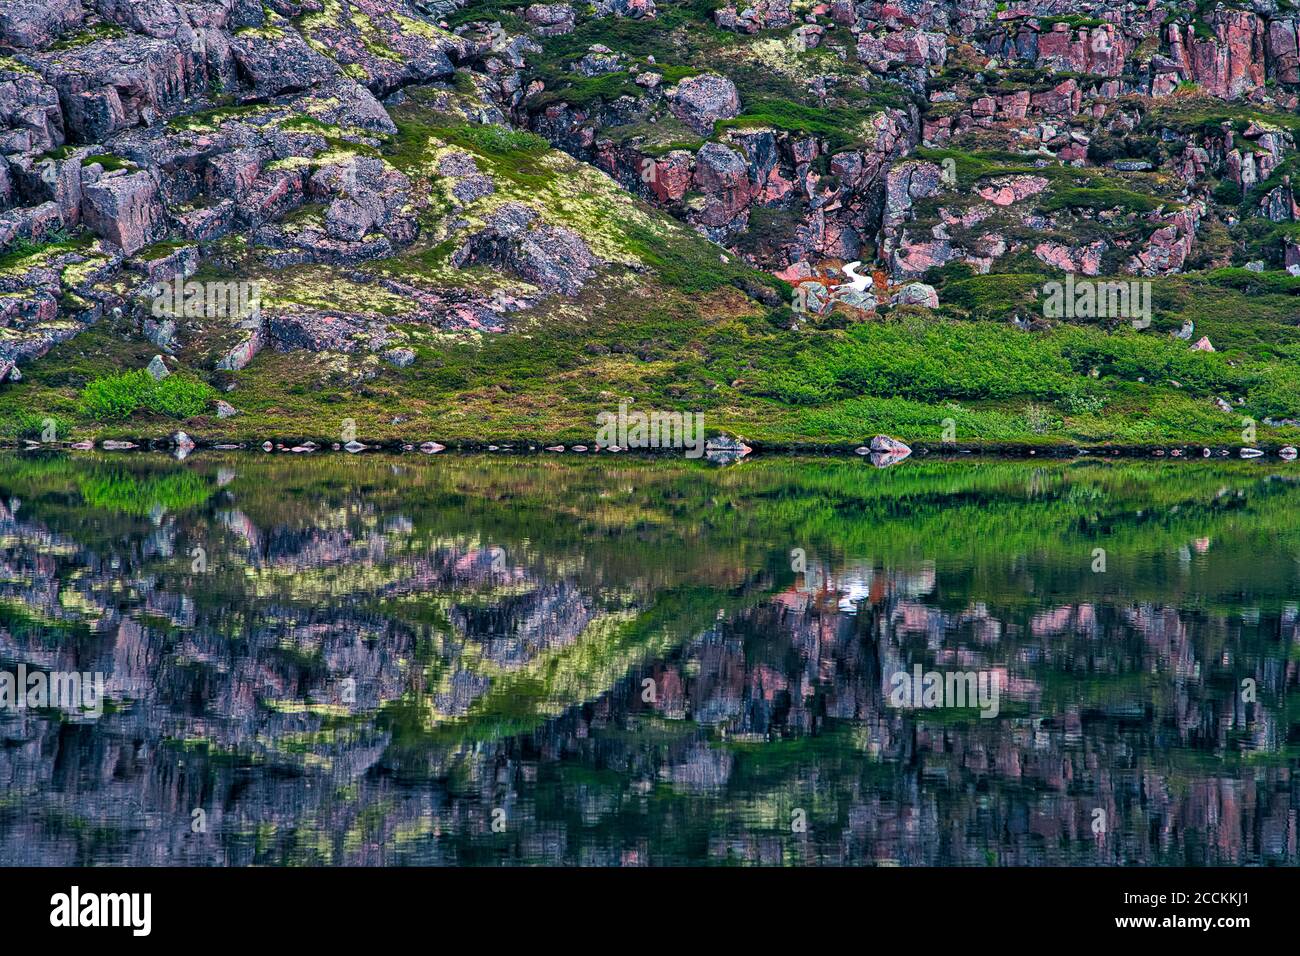 Rocky terrain reflecting in shiny coastal water Stock Photo